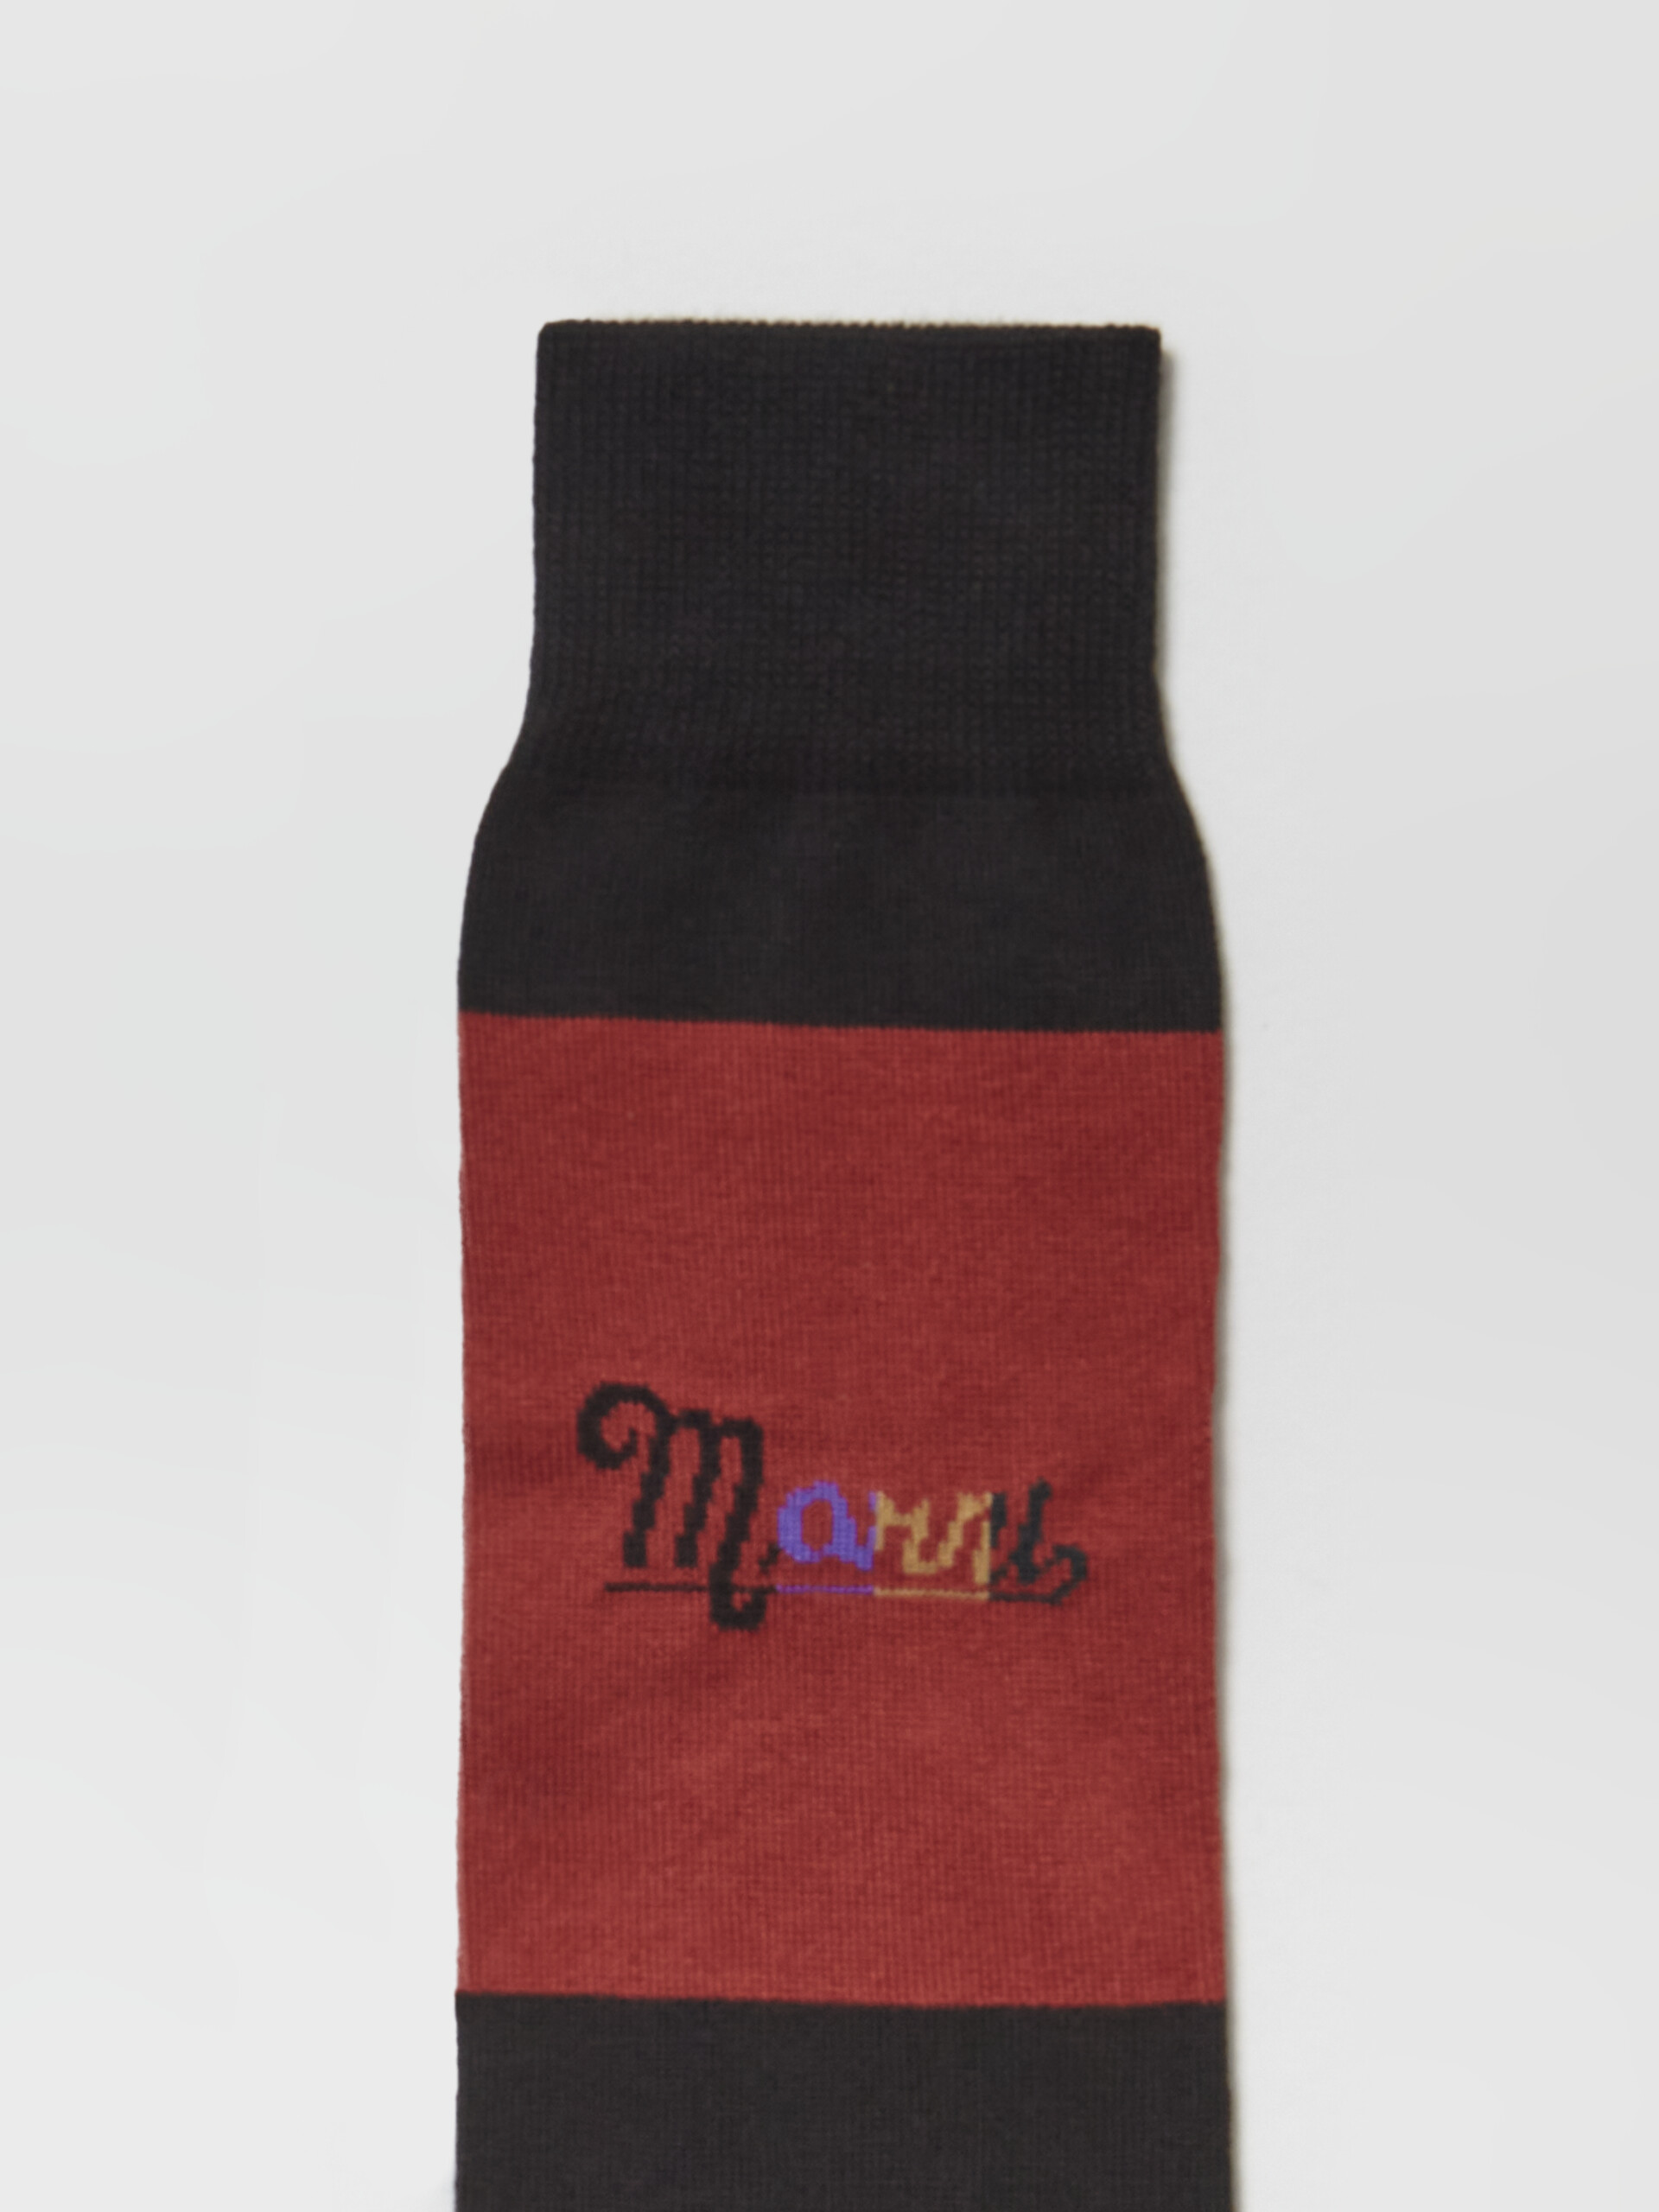 Socke aus schwarz-rot gestreiftem Nylon mit Regenbogen-Logo-Intarsie - Socken - Image 3